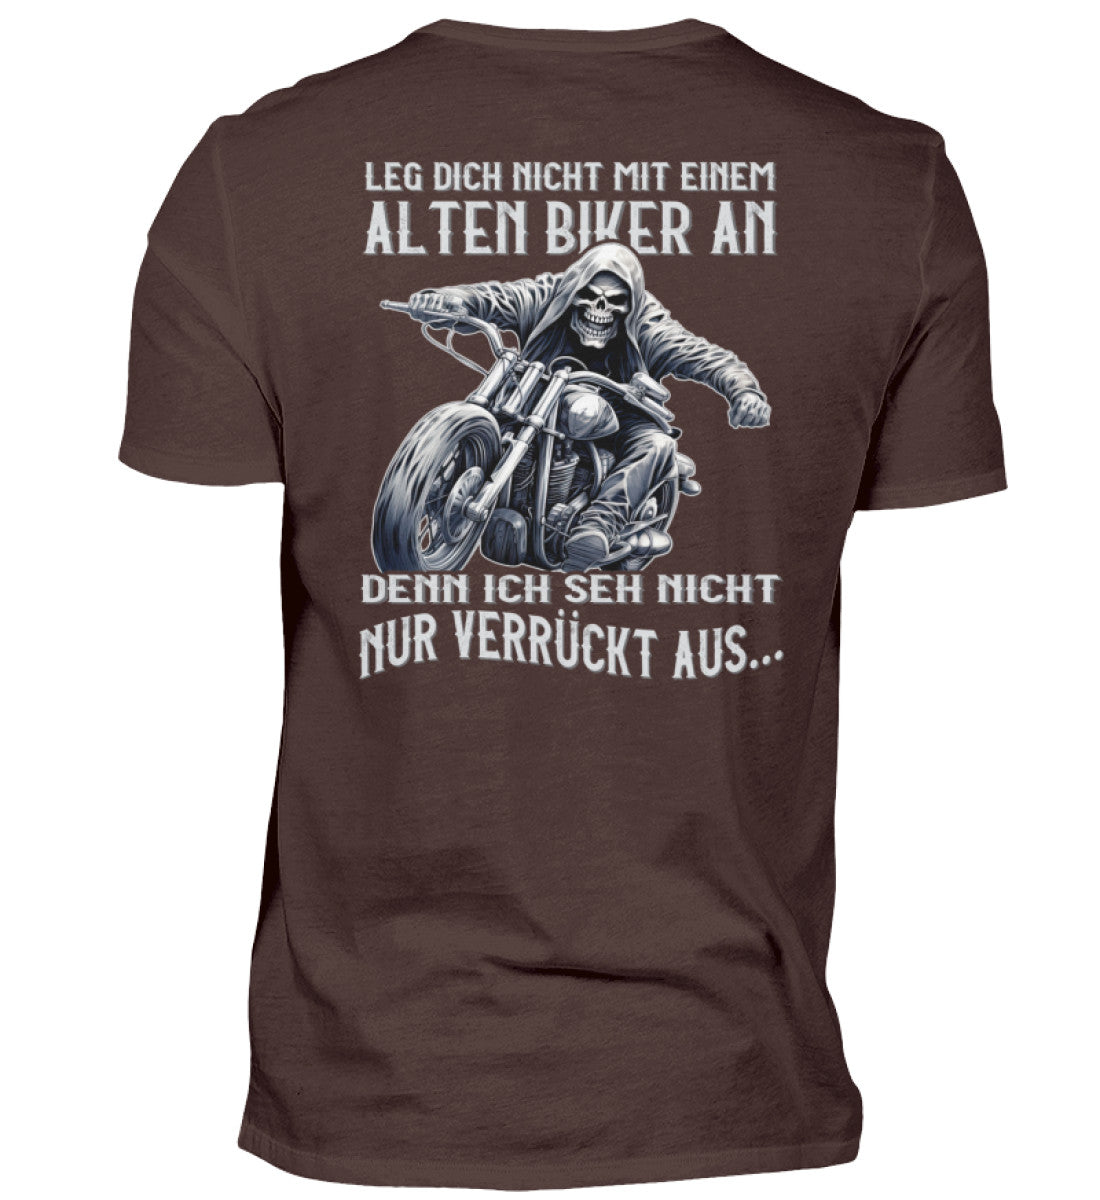 Ein Biker T-Shirt für Motorradfahrer von Wingbikers mit dem Aufdruck, Leg dich nicht mit einem alten Biker an, denn ich seh nicht nur verrückt aus, als Back Print - in braun.